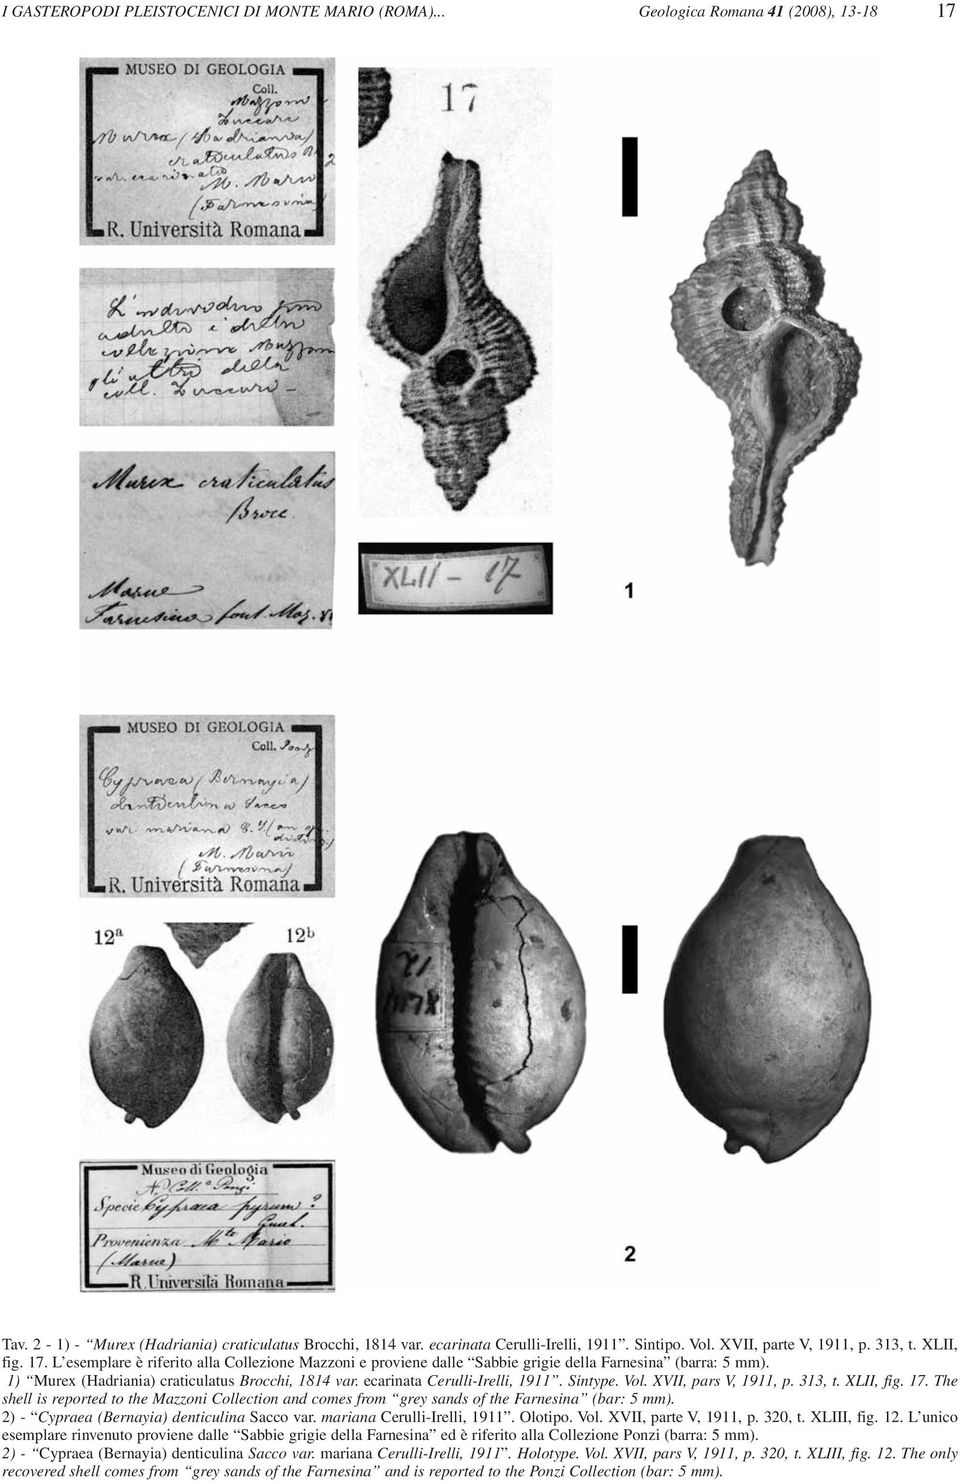 1) Murex (Hadriania) craticulatus Brocchi, 1814 var. ecarinata Cerulli-Irelli, 1911. Sintype. Vol. XVII, pars V, 1911, p. 313, t. XLII, fig. 17.